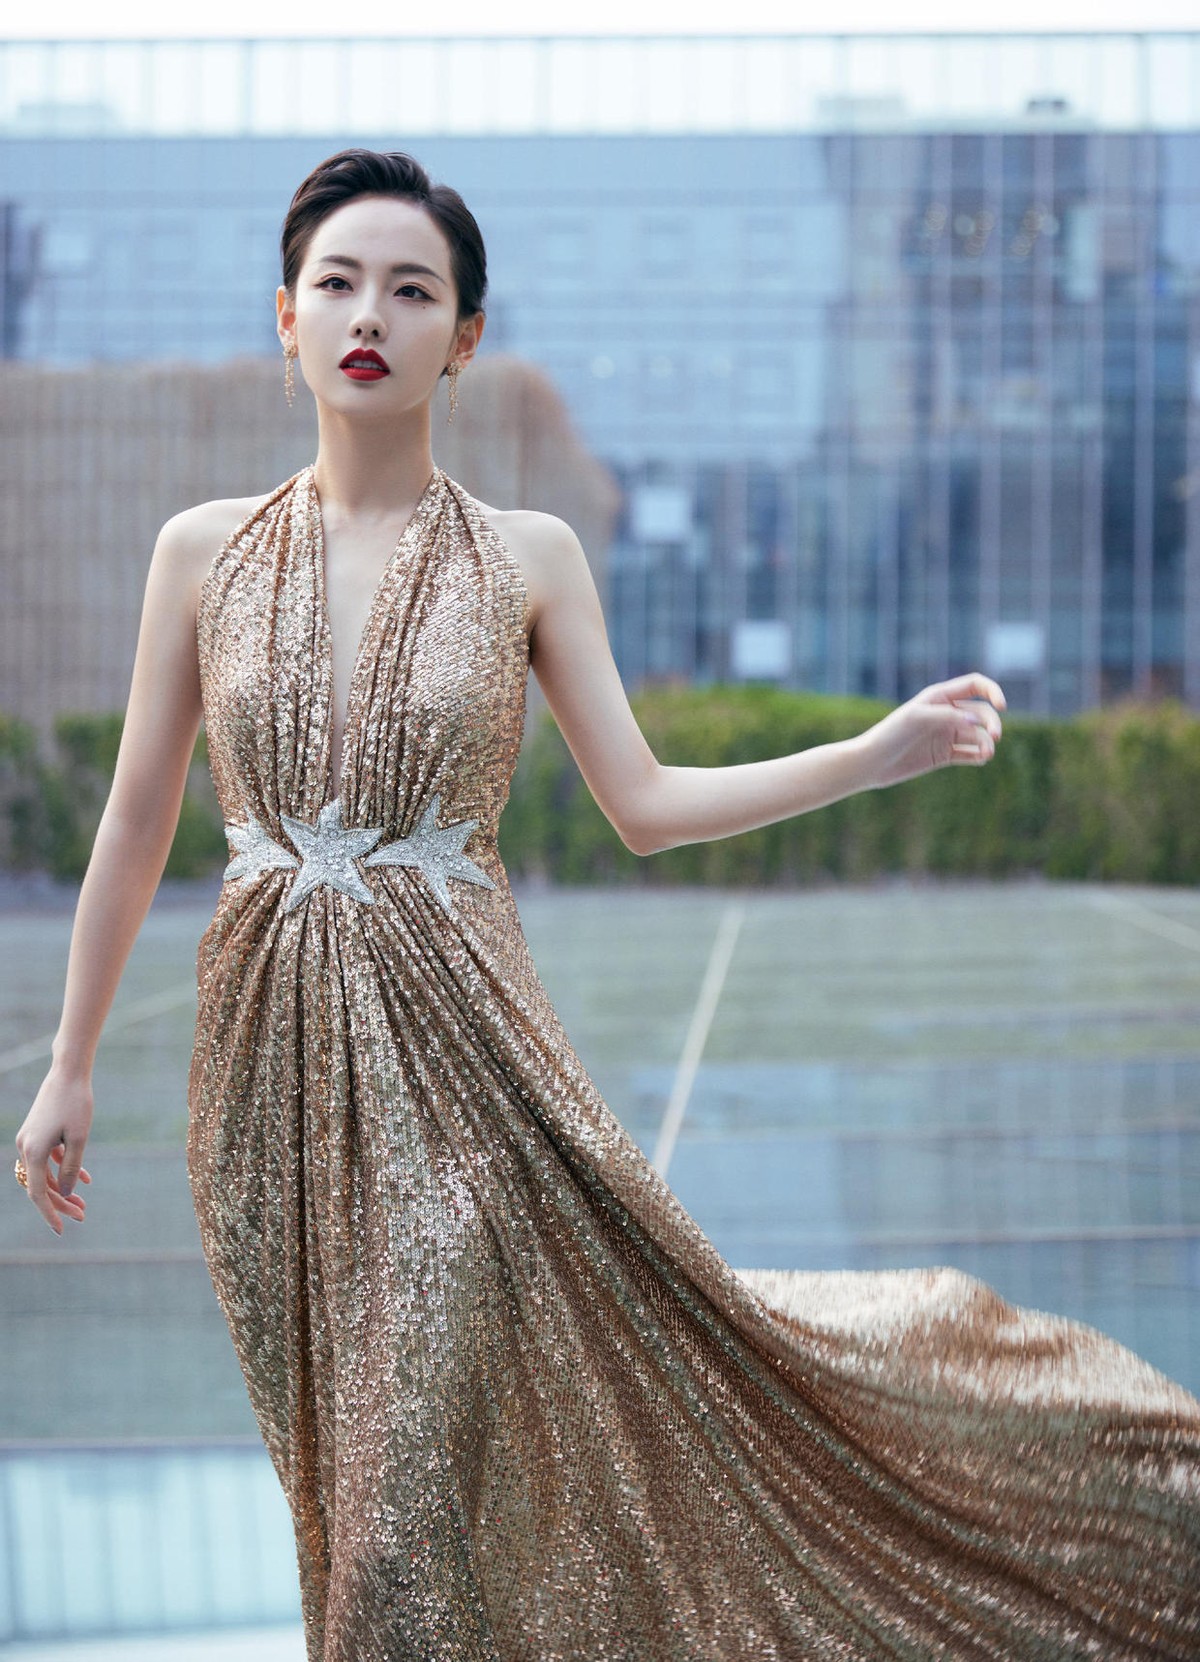 劉亦菲生圖仍驚艷，原裝身材穿亮片裙美成紅毯焦點，胖點反而更美-圖7